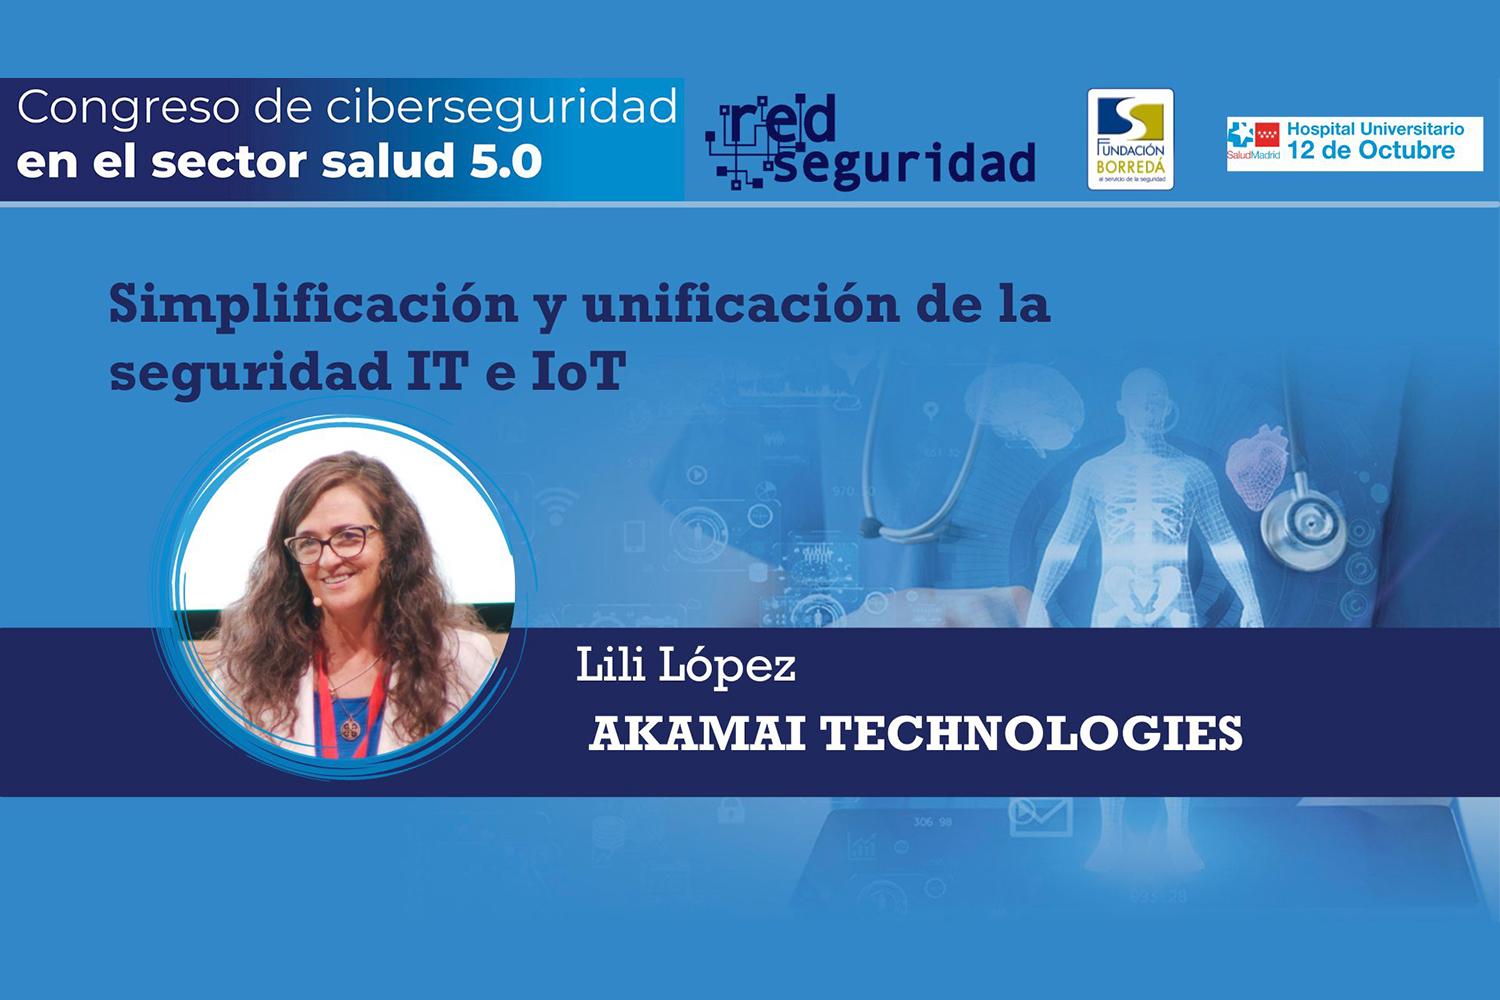 Lili López (Akamai Technologies): Simplificación y unificación de la seguridad IT, IoT y OT